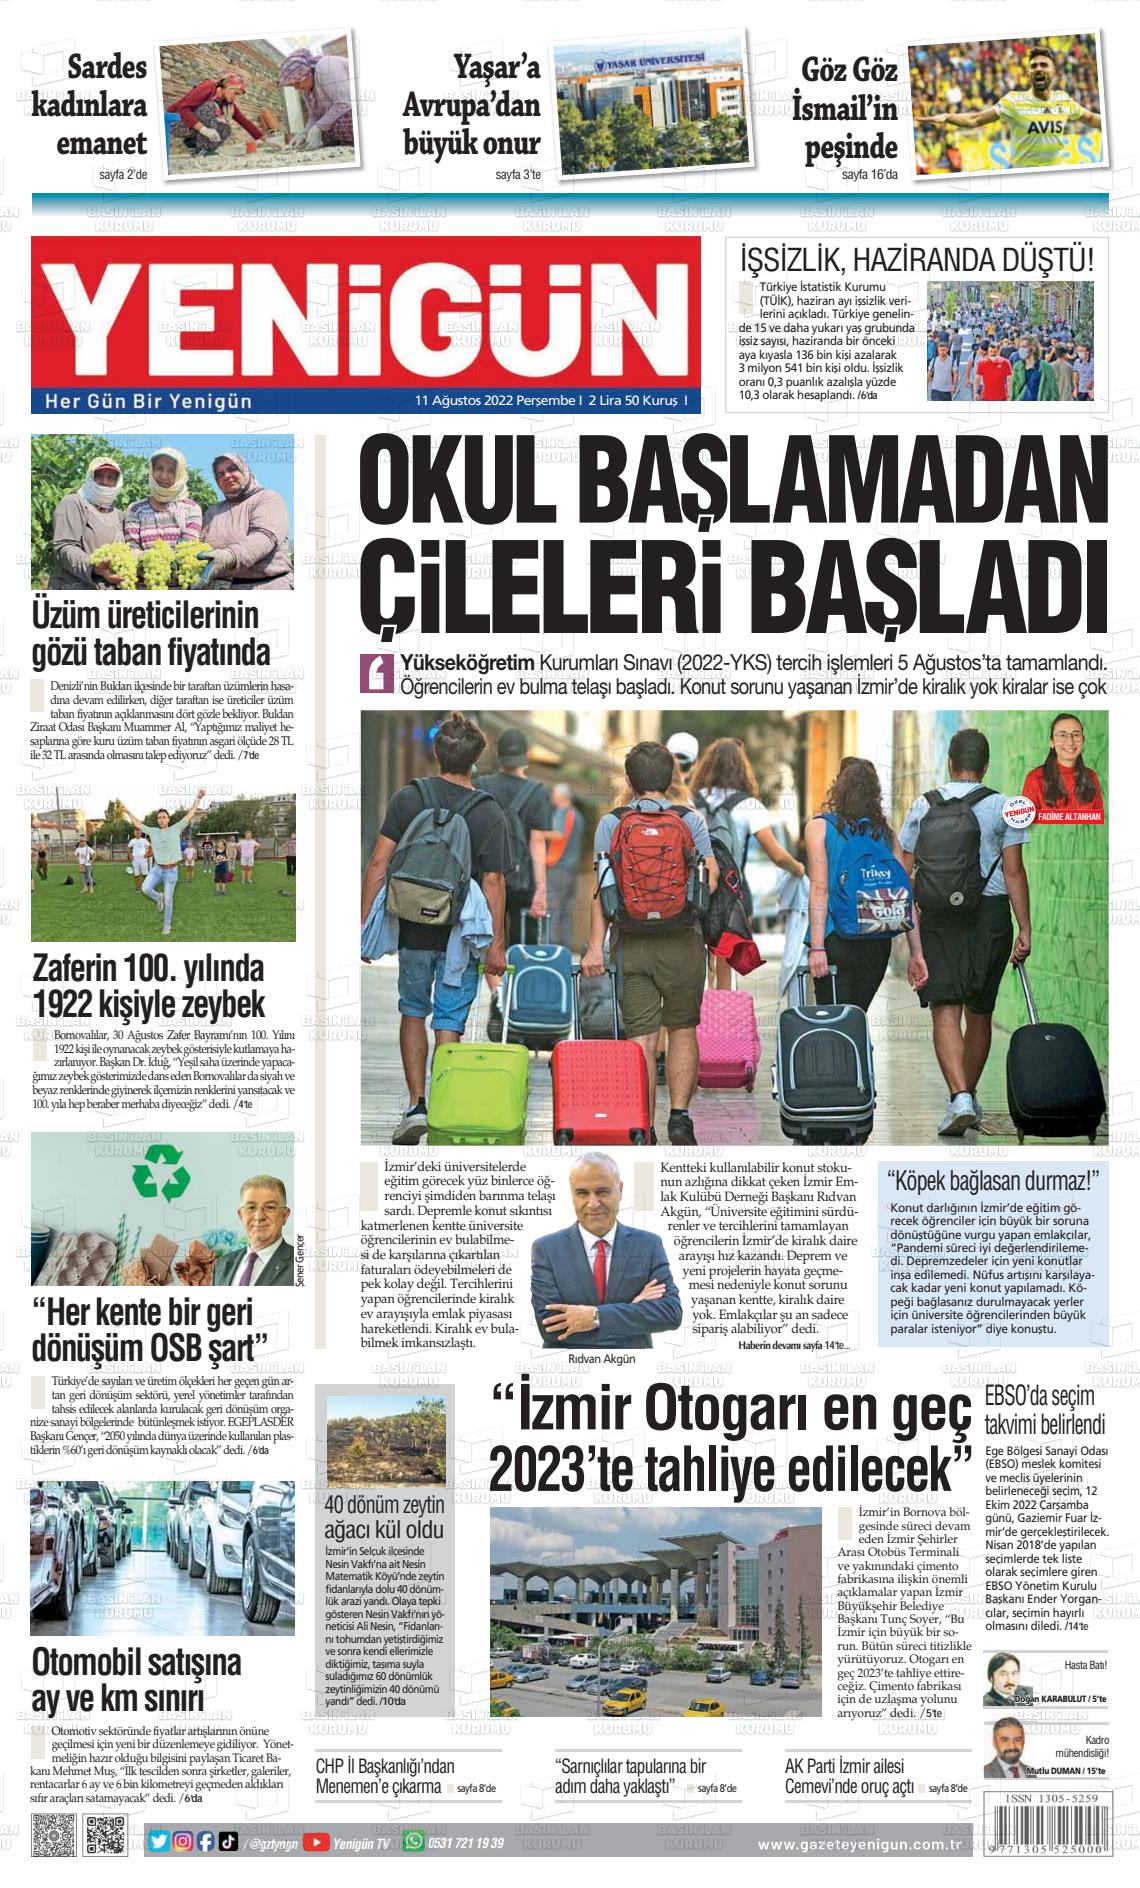 11 Ağustos 2022 Yeni Gün Gazete Manşeti